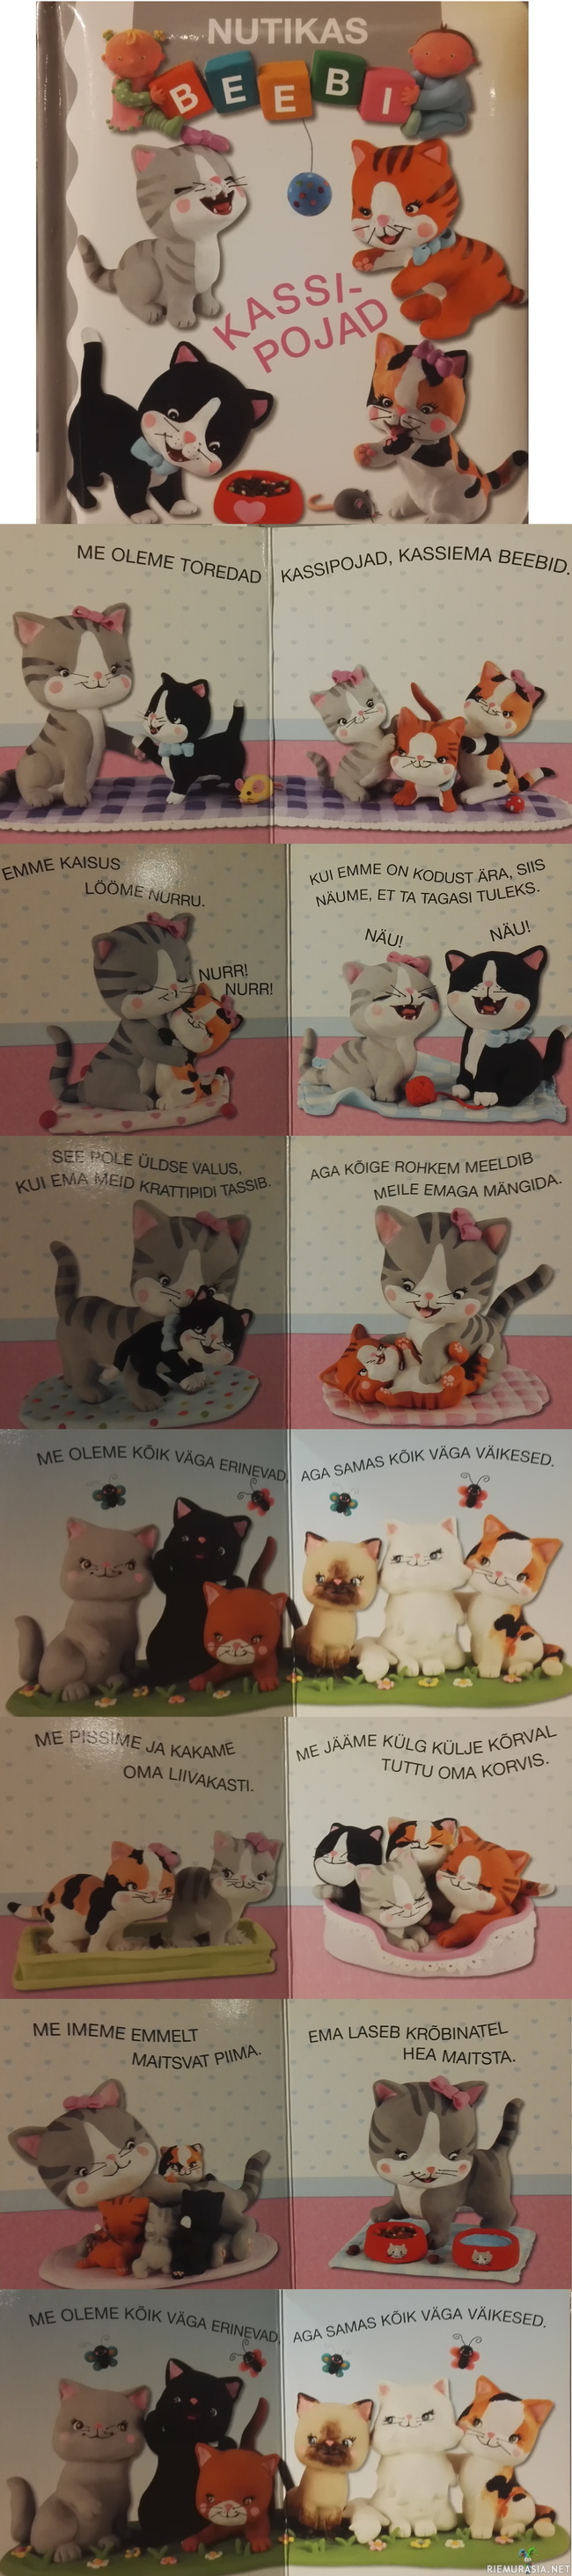 Kassipojad full edition!! - Tähän liittyen https://www.riemurasia.net/kuva/Virolaiset-kissat/195440

Toivoin joululahjaksi viron kielistä lasten kissakirjaa, koska onhan se nyt vaan niin hauskaa. Sain ja jaan sen teillekin. 